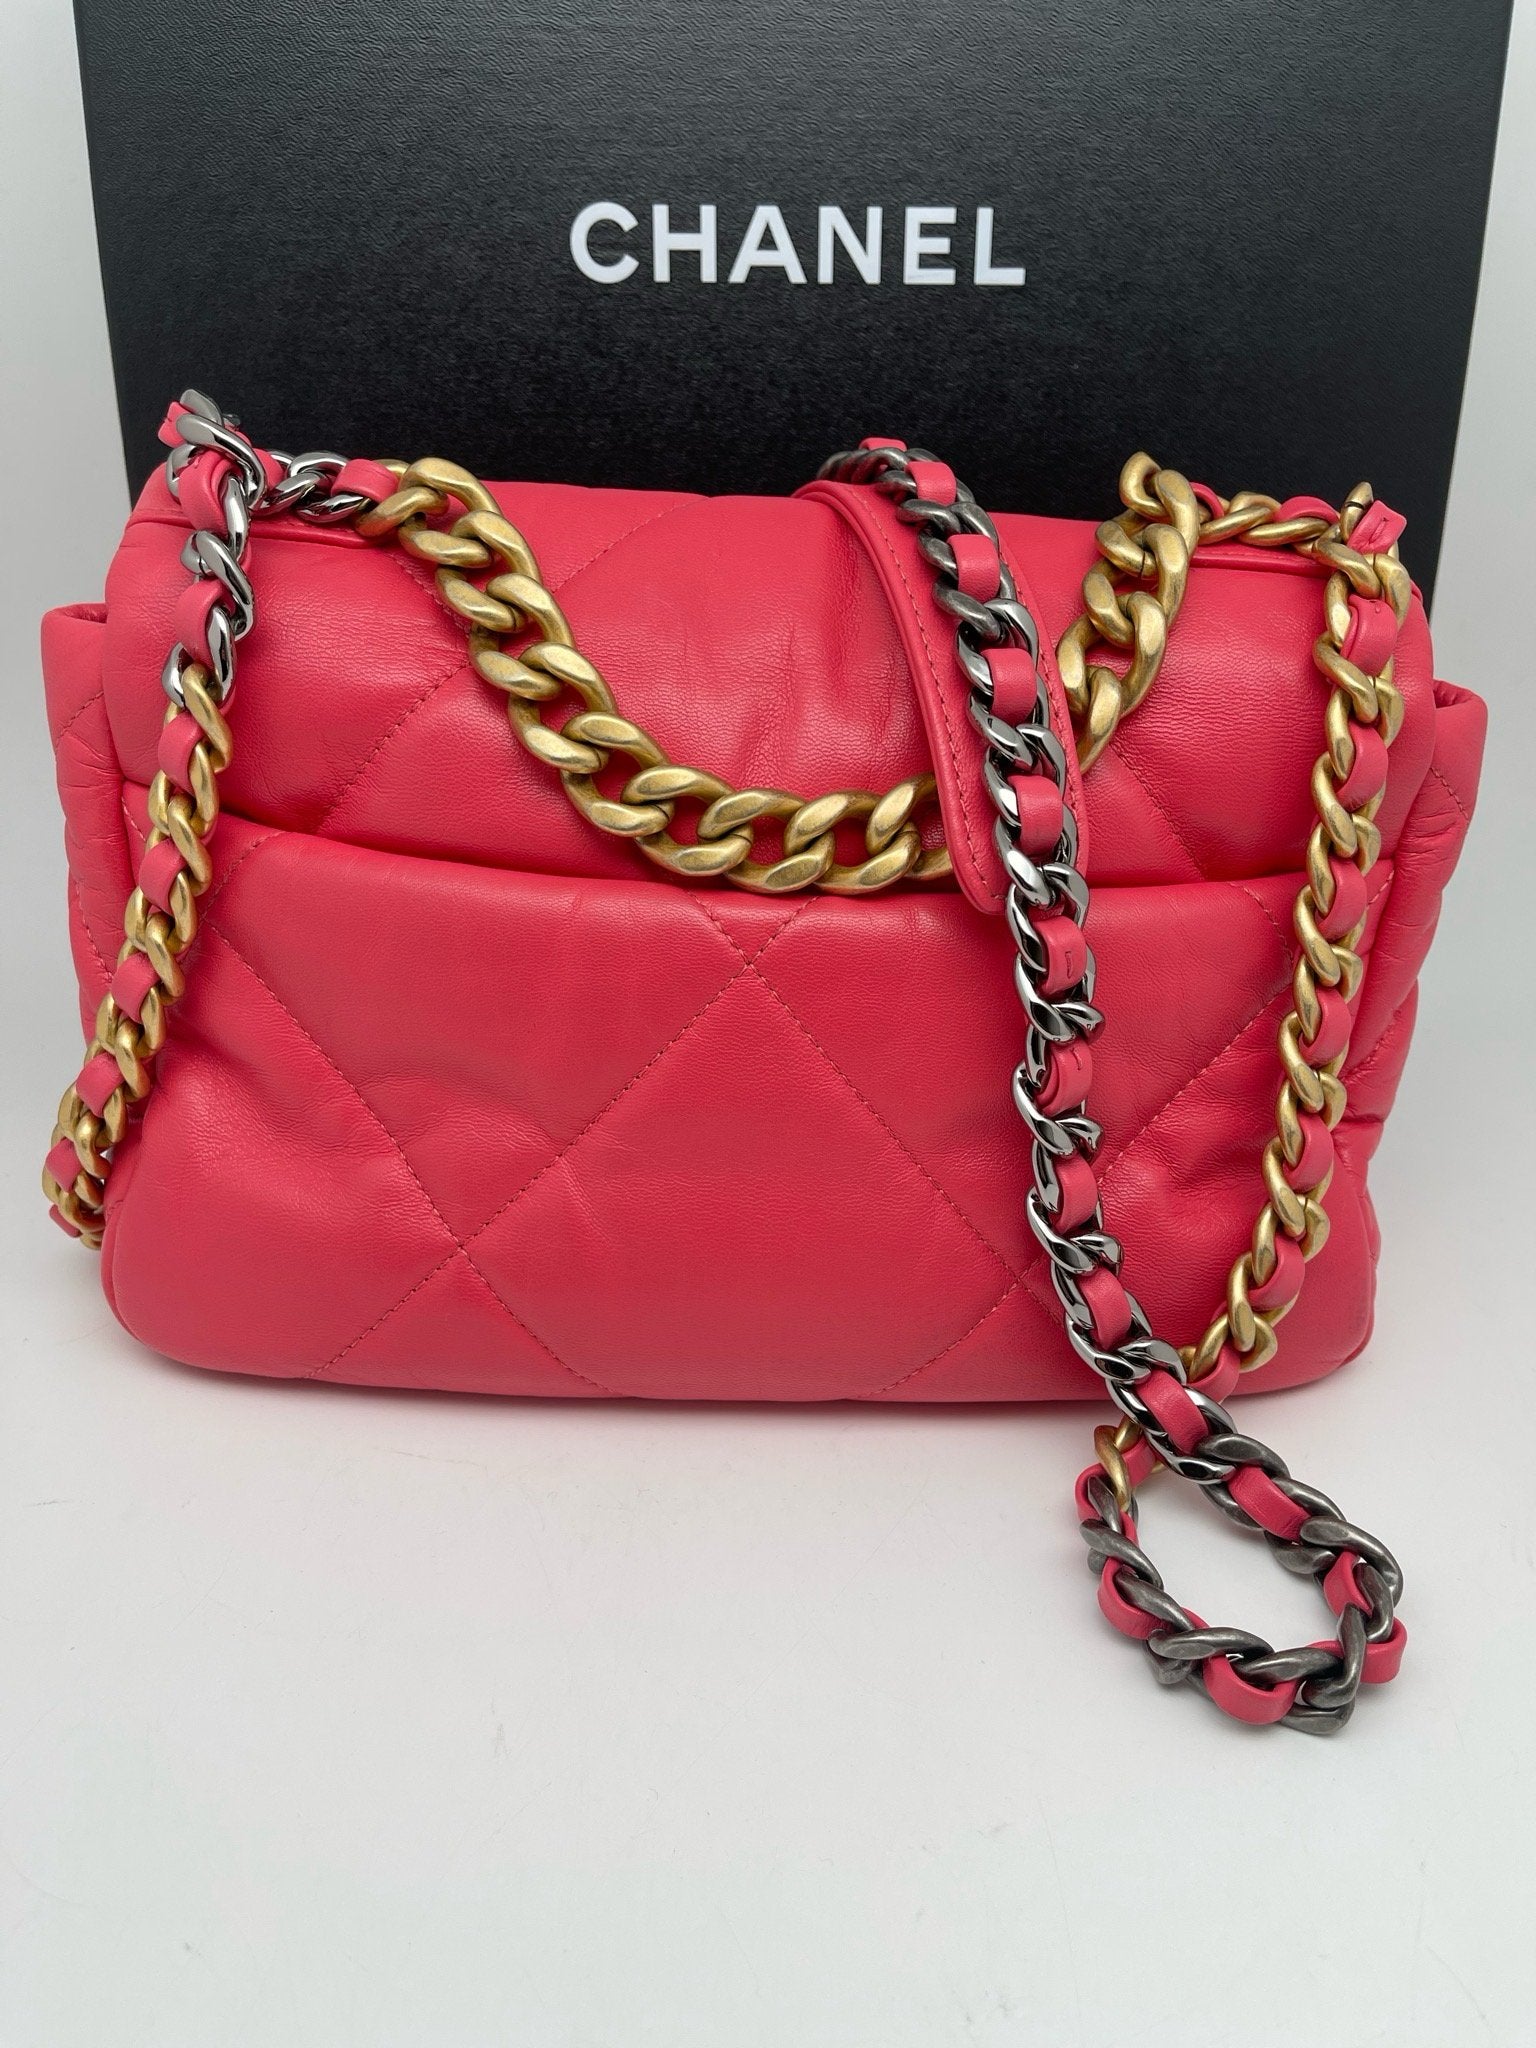 Chanel - Chanel 19 - Les Folies d&